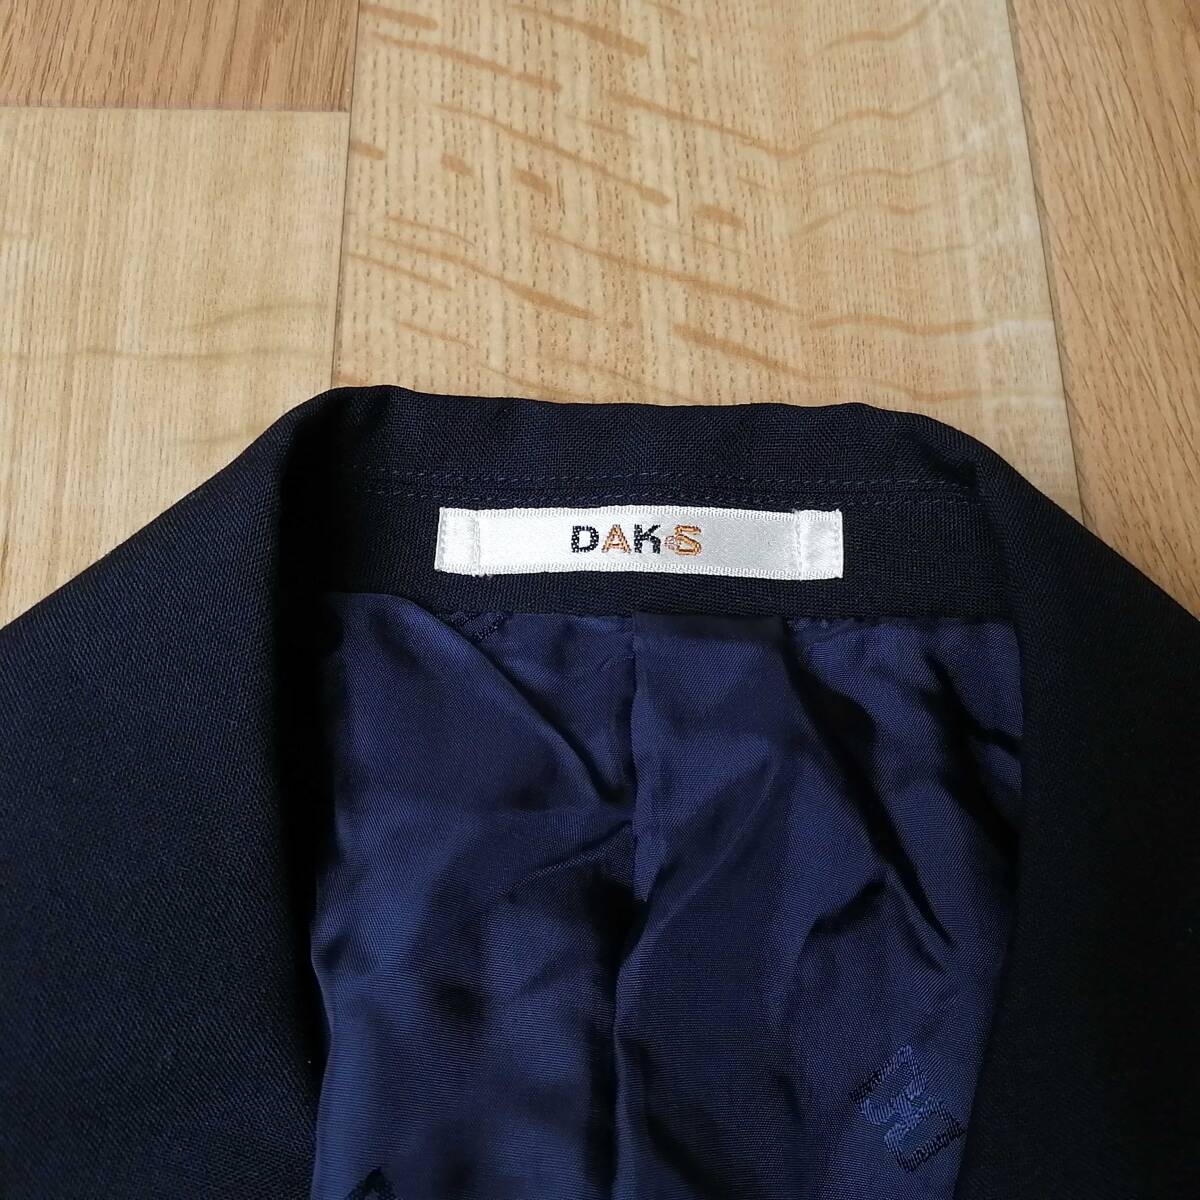 DAKS ダックス レディース スカートスーツ 紺ブレ ダブルスーツ サイズ11AR 24-0305bu09_画像4